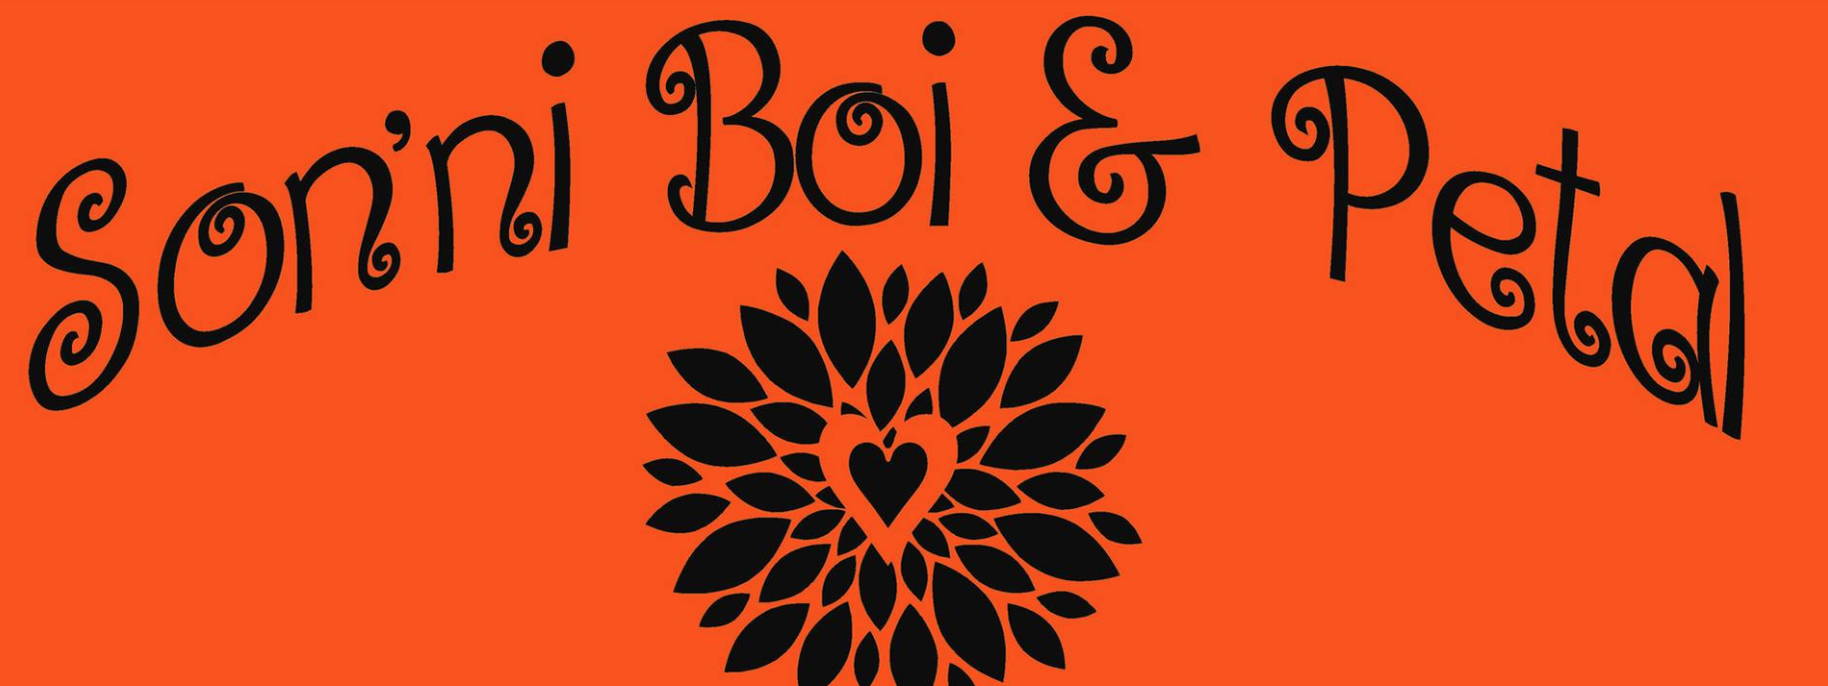 Sonni Boi & Petal logo